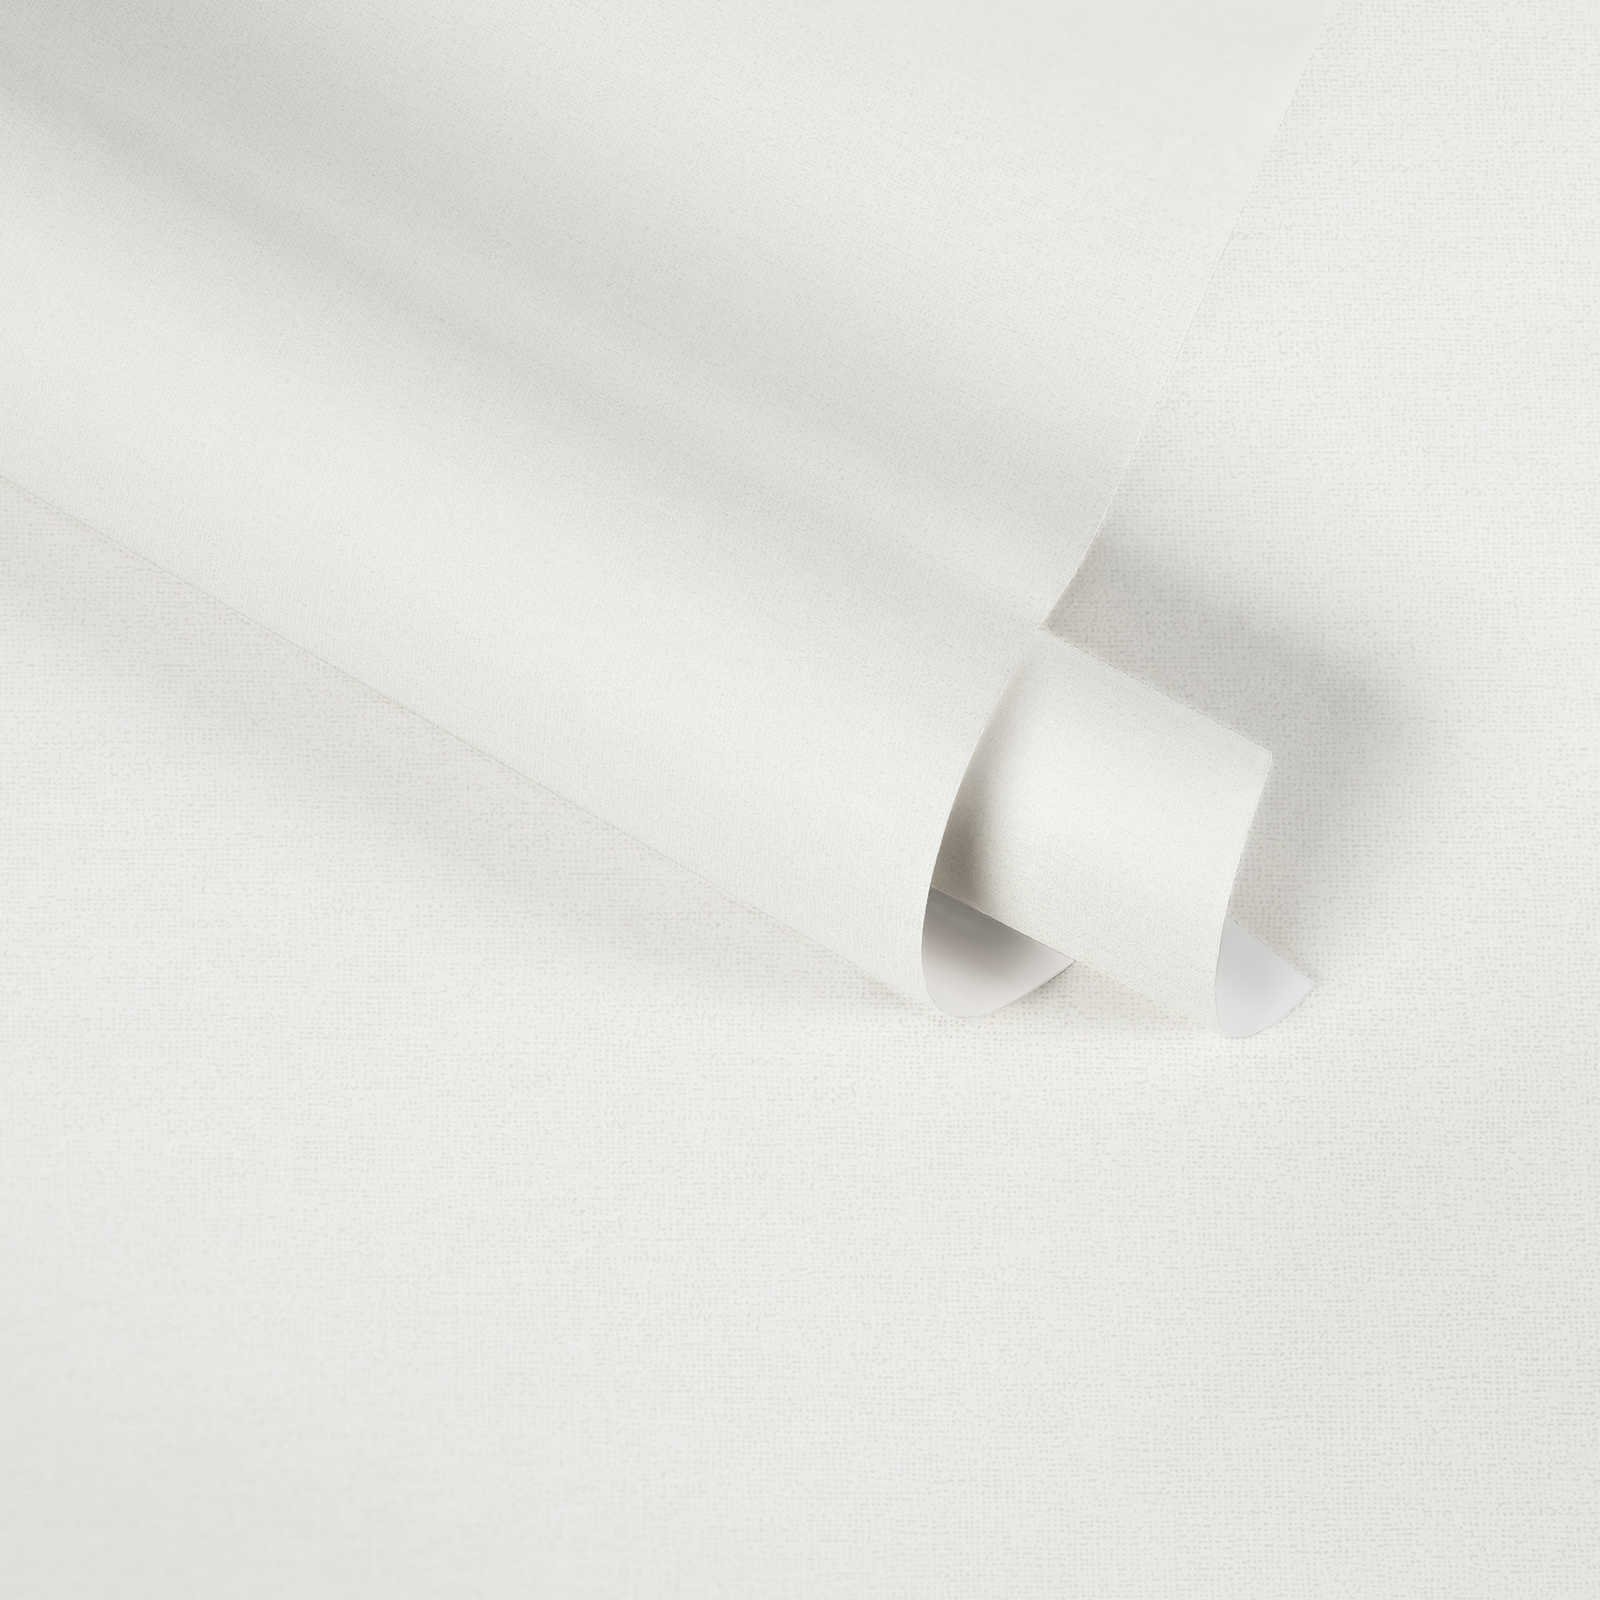             Papier peint uni blanc pur de MICHALSKY
        